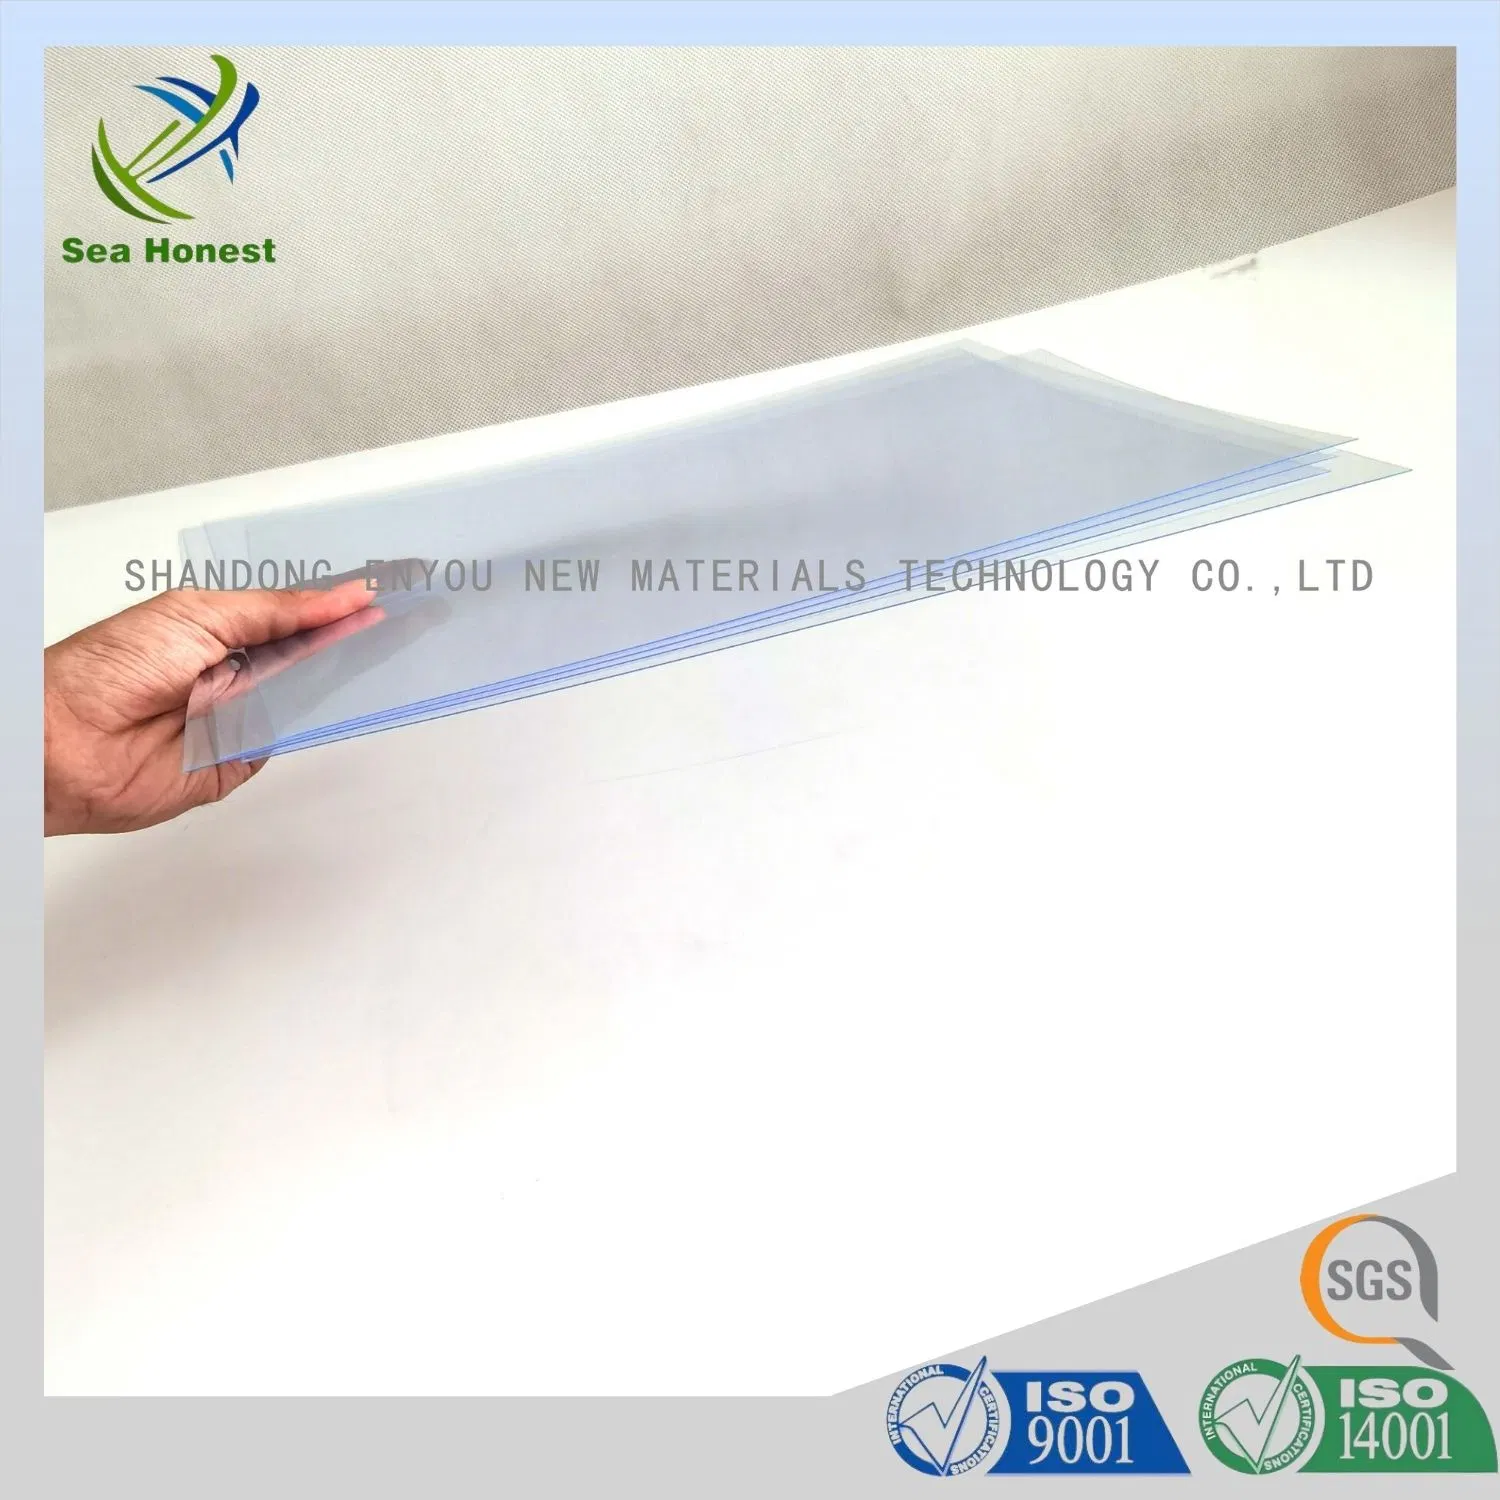 طباعة عالية الجودة للشاشة مقاس 0,21 مم - 2 مم طباعة بلاستيكية شفافة من مادة PVC/Pet Sheet